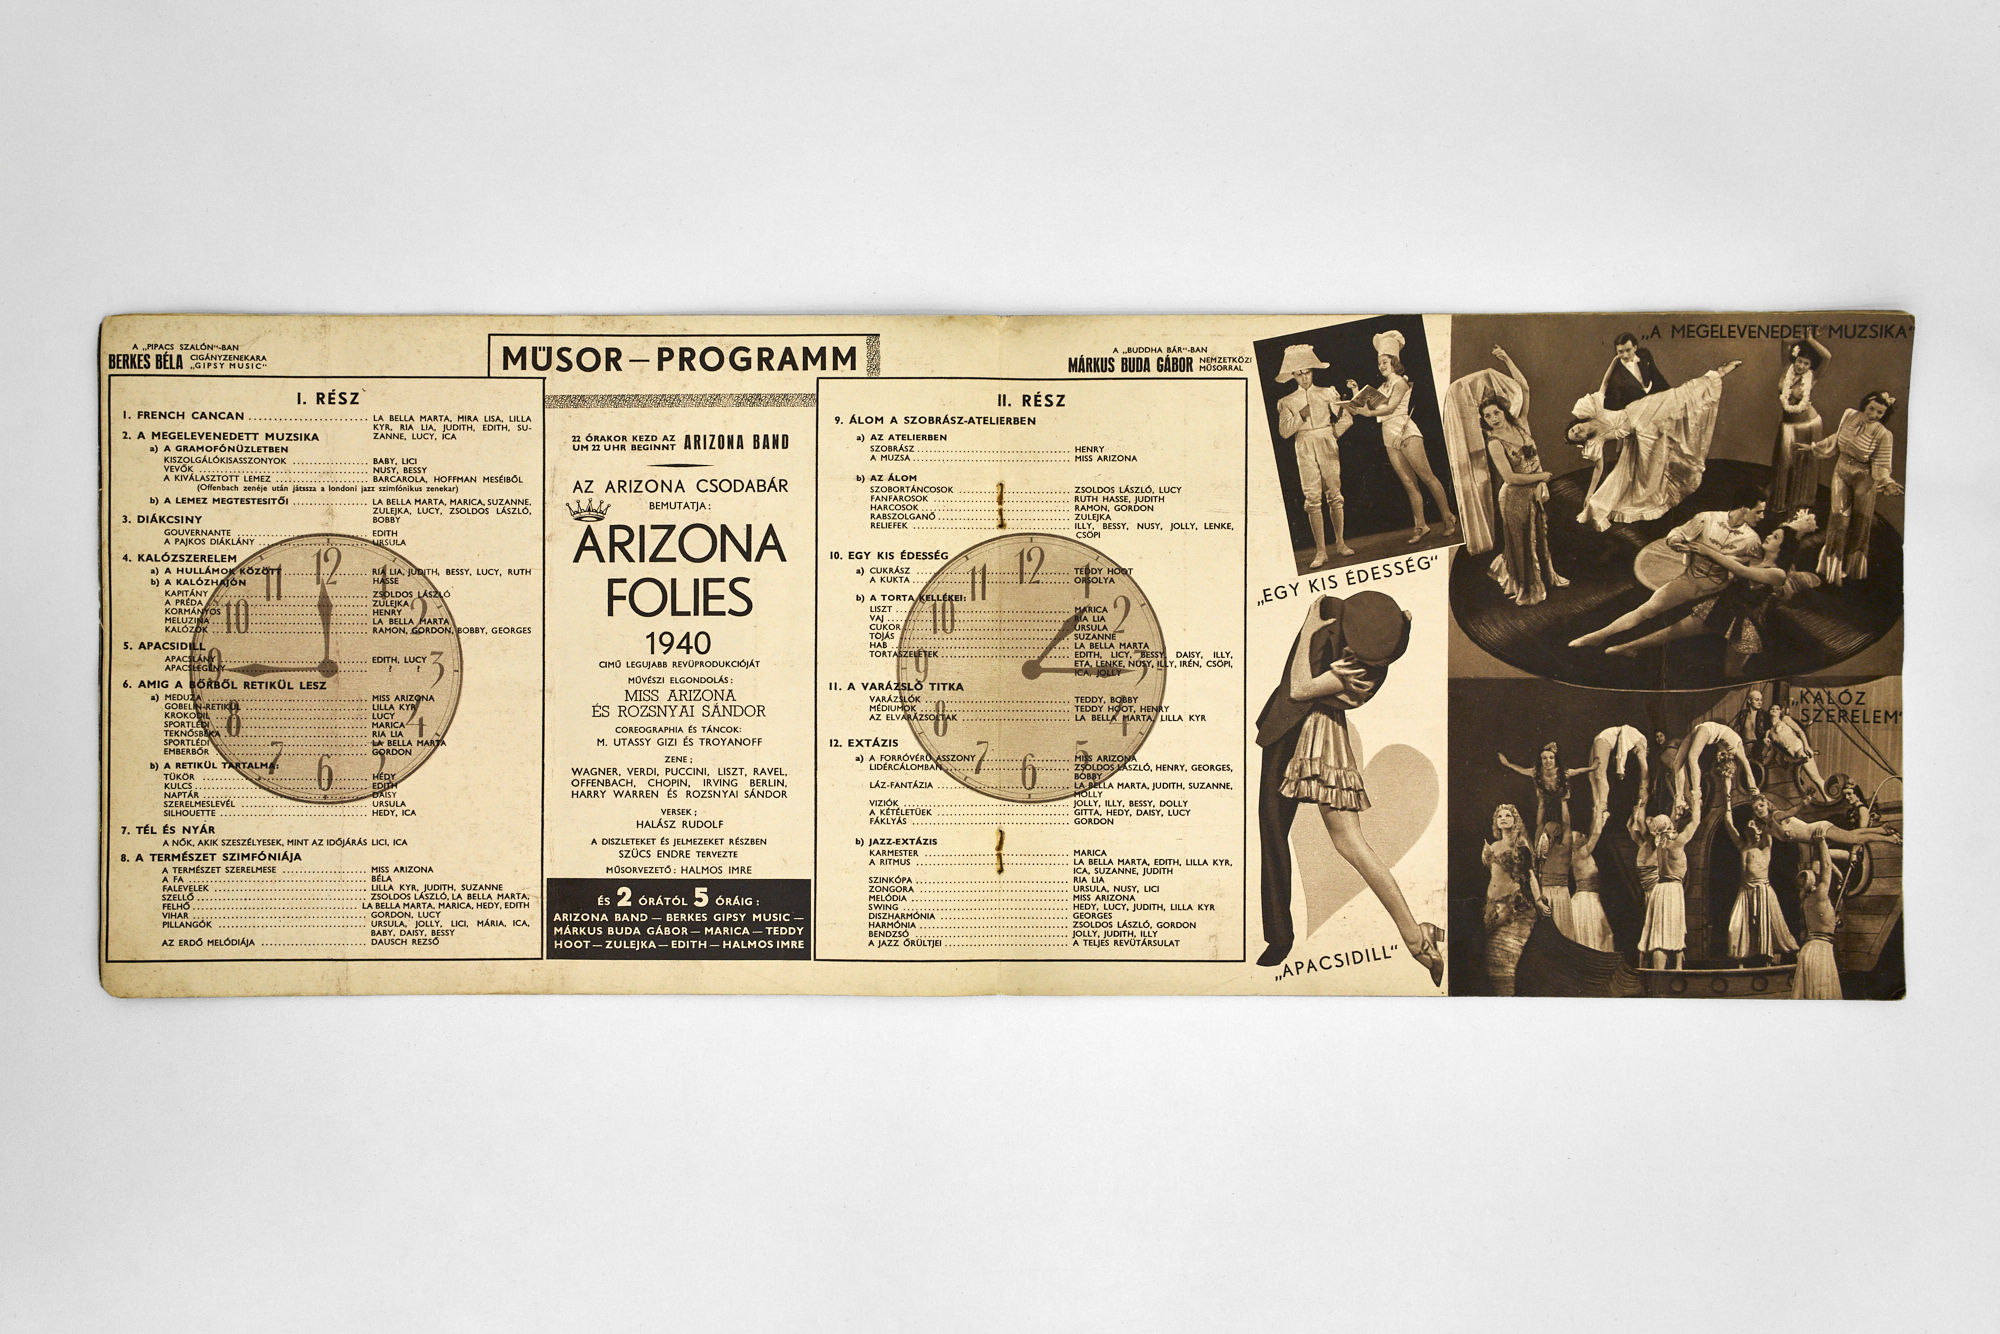 Az Arizona mulató programfüzete, 1940 (a Pécsi József Fotográfiai Szakkönyvtár tulajdona)